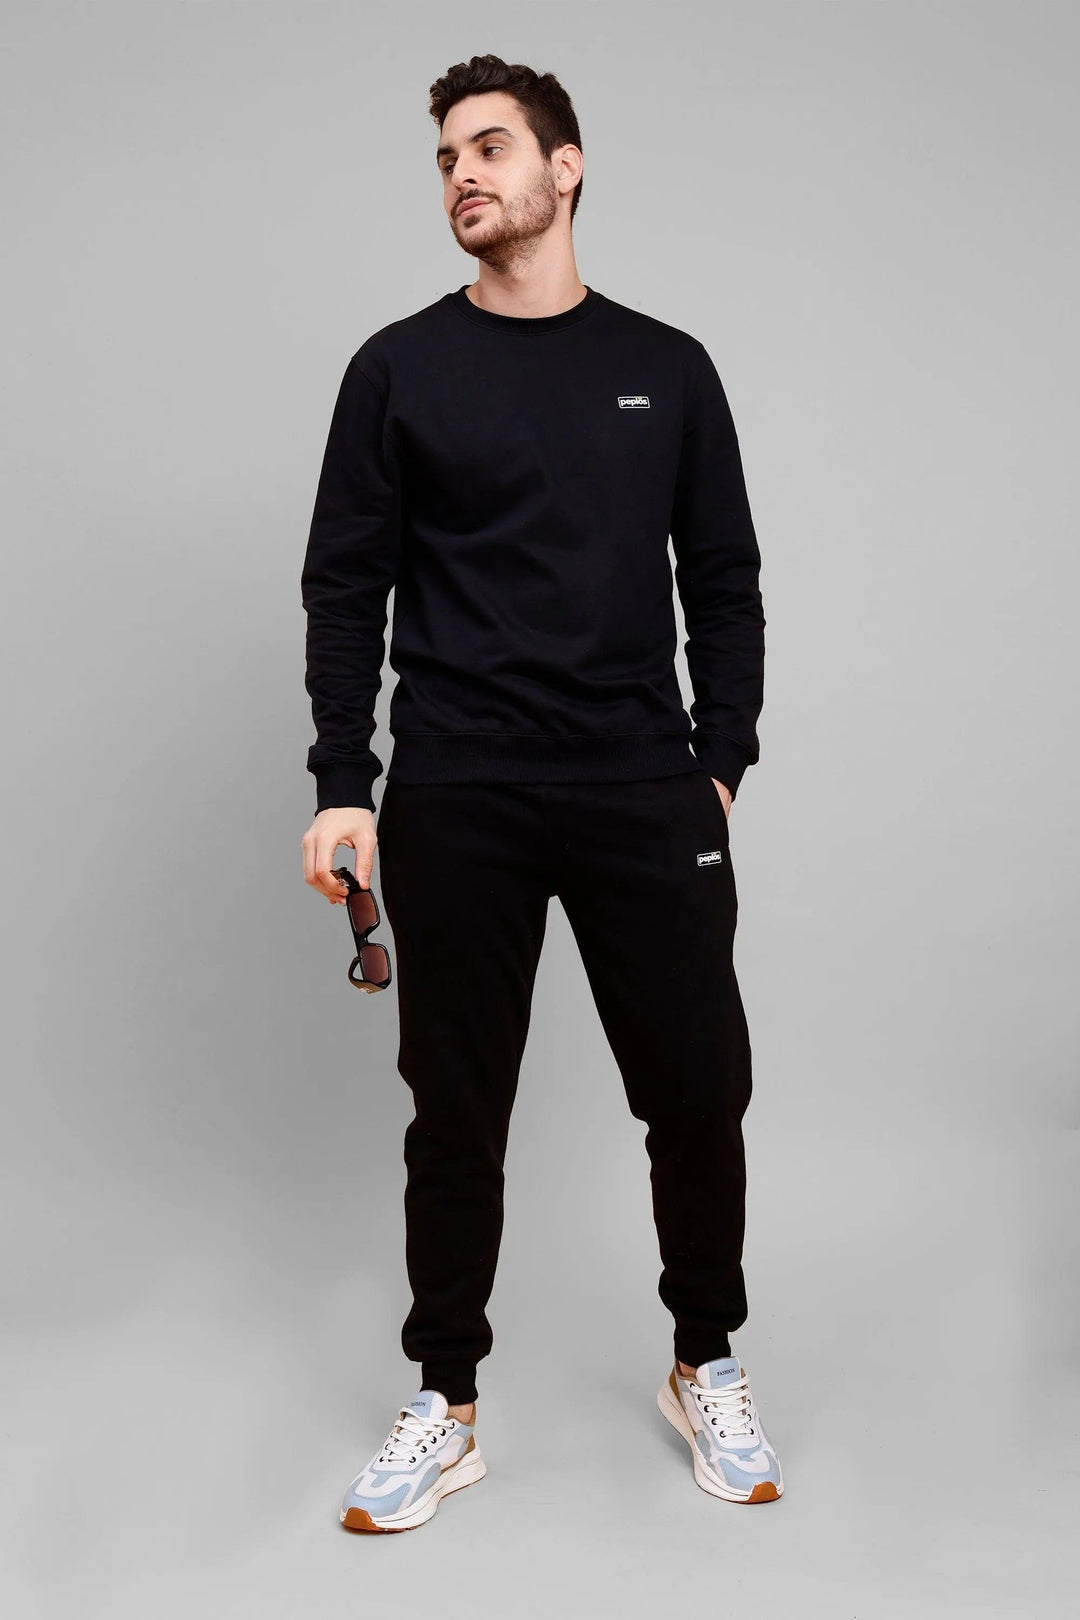 Regular Fit Back Printed Black Sweatshirt-Trouser Co-ord Set For Men